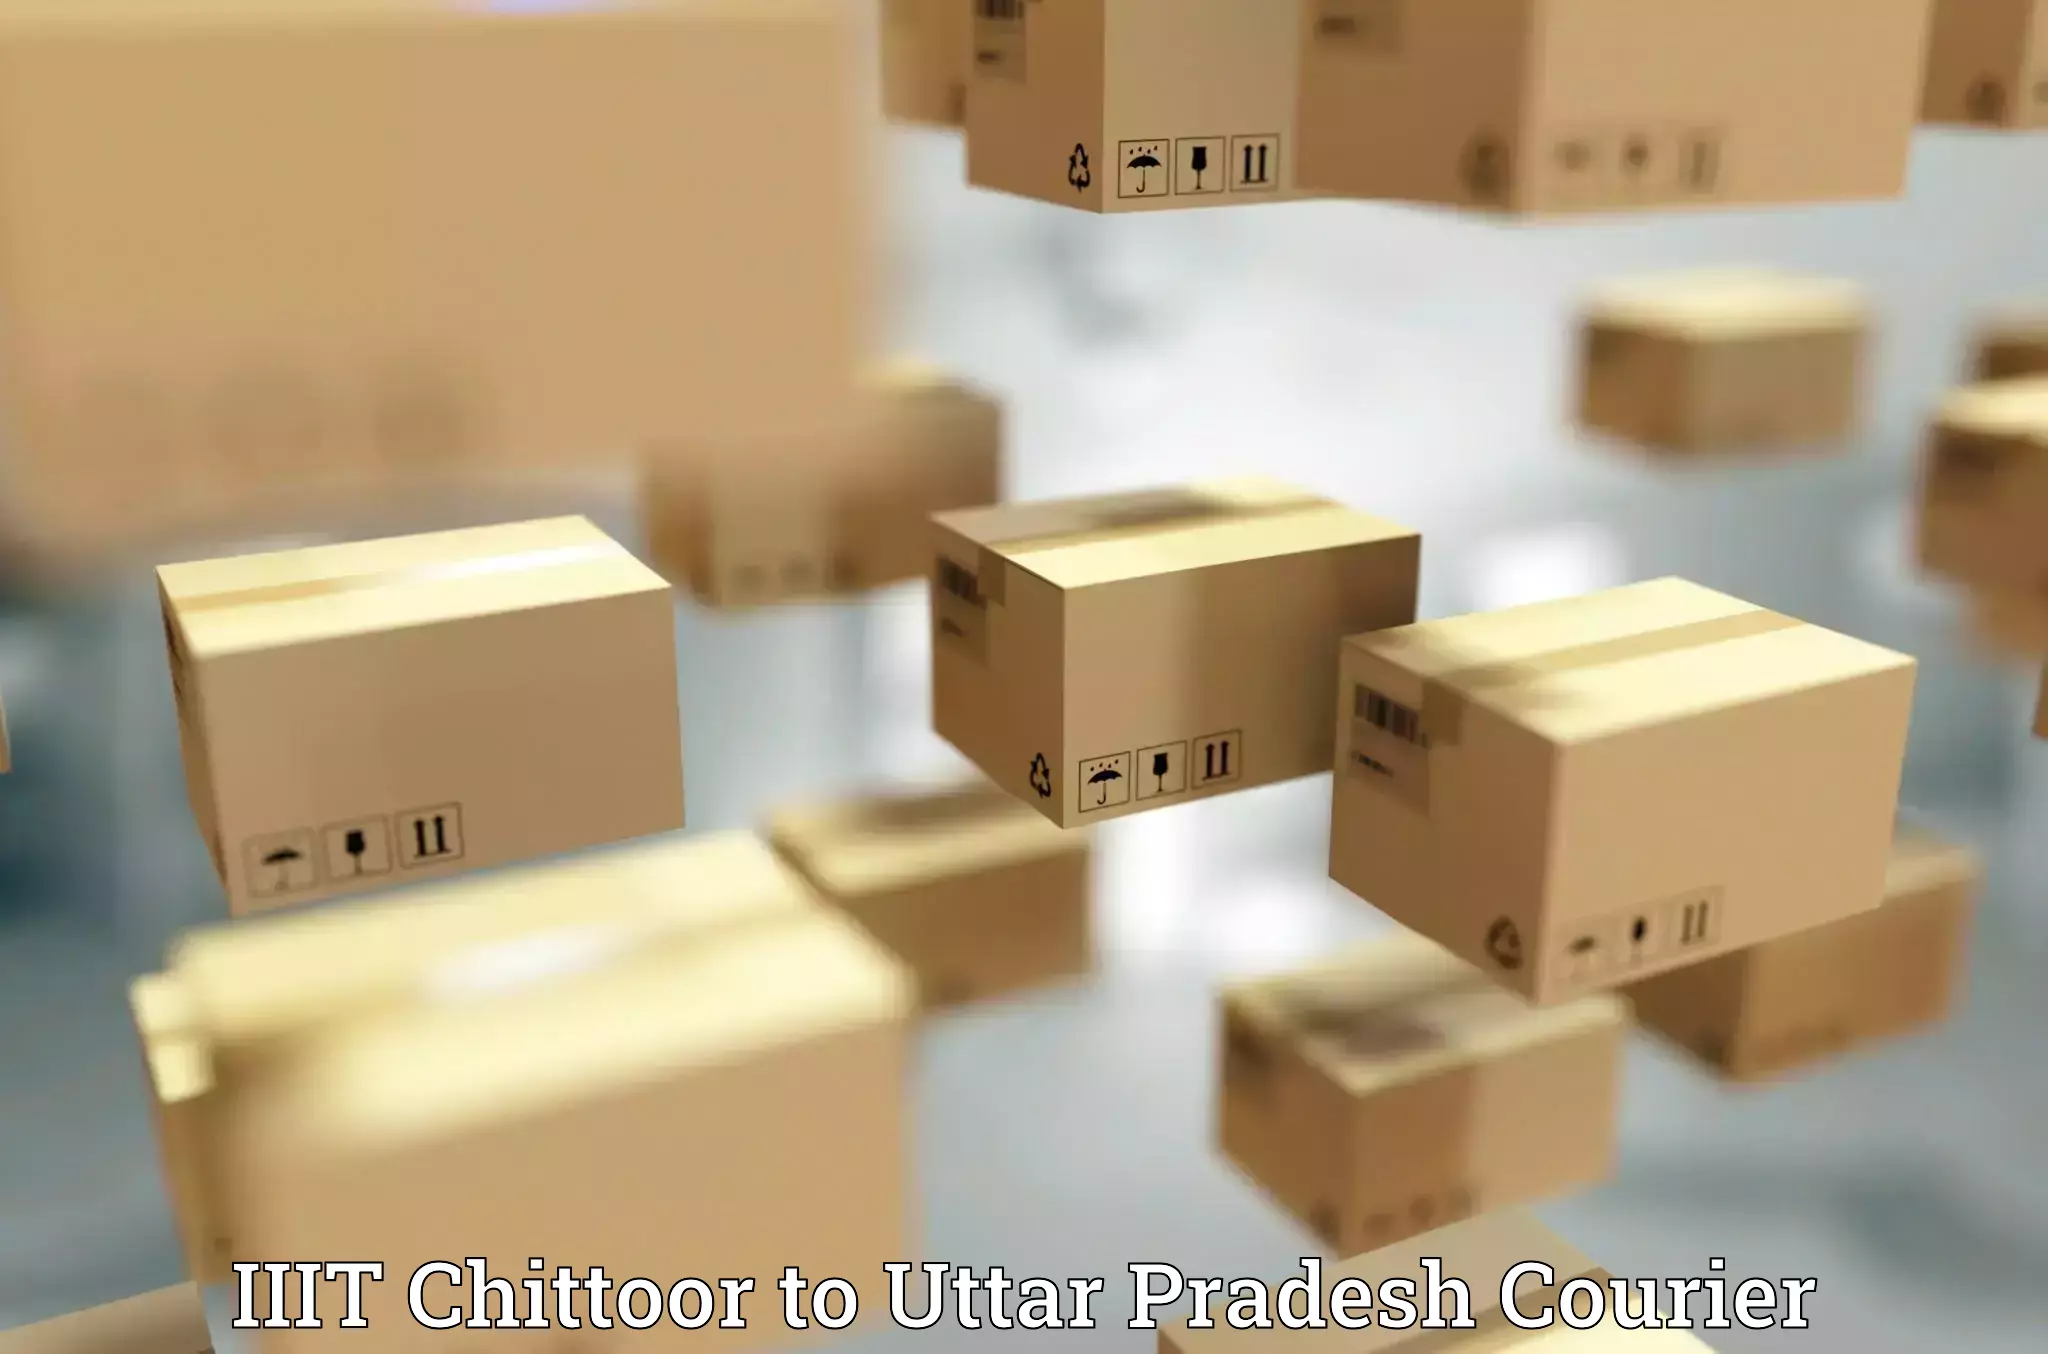 Parcel service for businesses IIIT Chittoor to Kuru